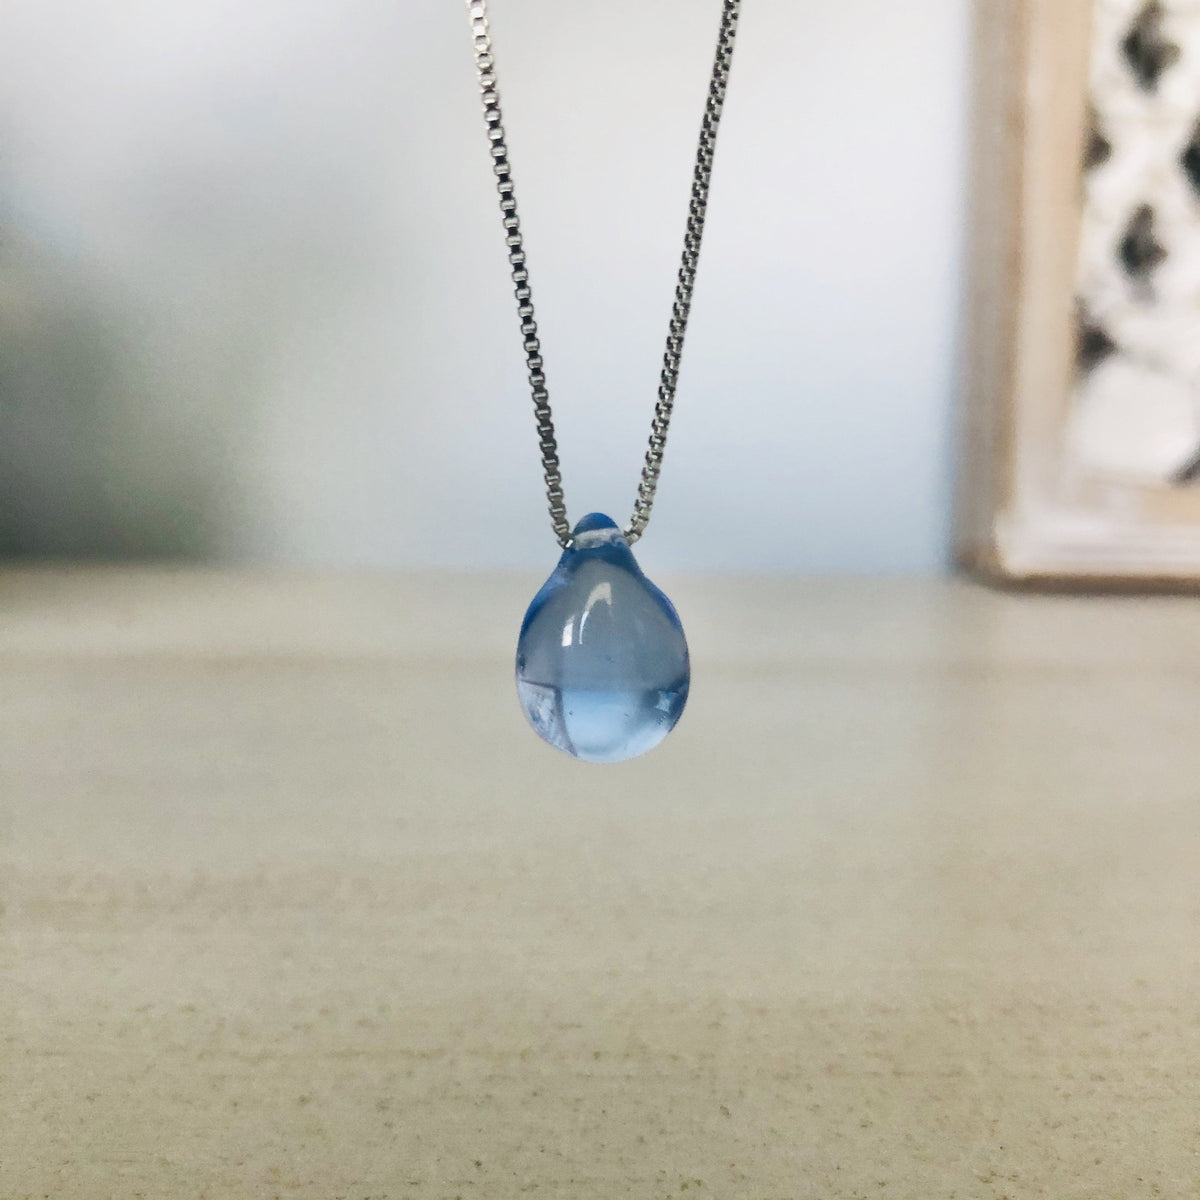 Mermaid Tear Glass Pendant Necklace Jewelry Luke Adams Glass Blowing Studio Light Blue 